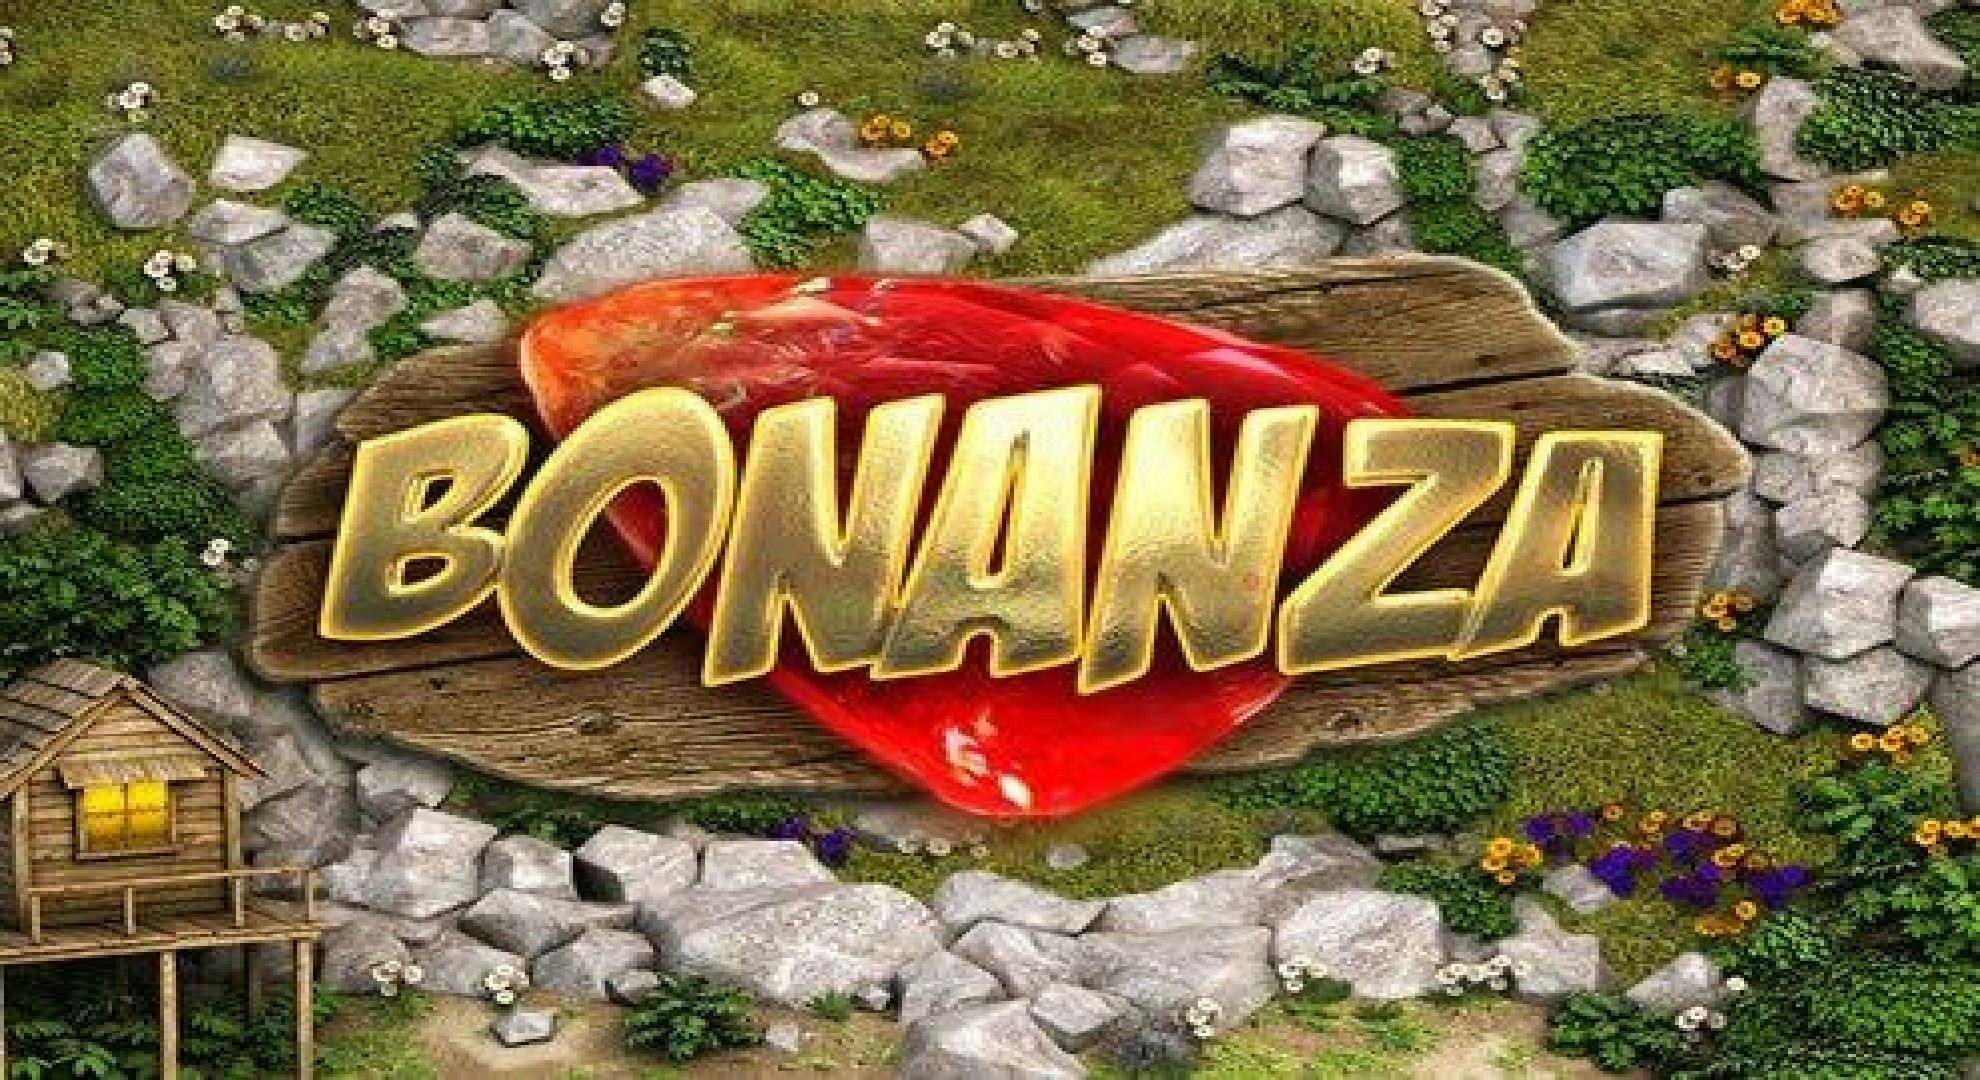 Bonanza Slot Online Free Play